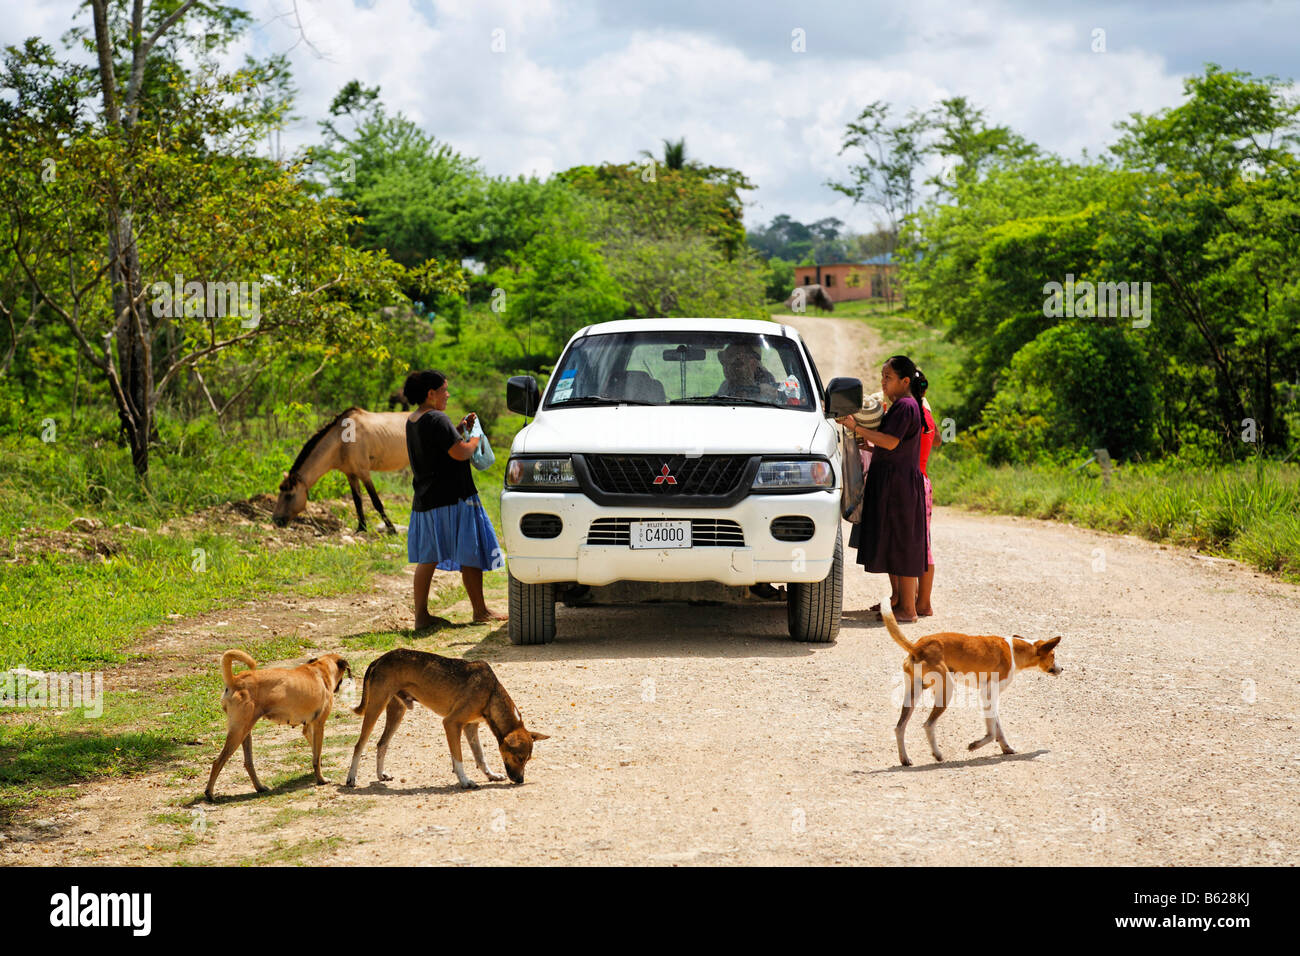 Einheimische Frauen mit Souvenirs für Touristen in ein Mitsubishi-Auto, Hunde, Pferde, Schotterweg, Punta Gorda, Belize, Mittelamerika, Stockfoto